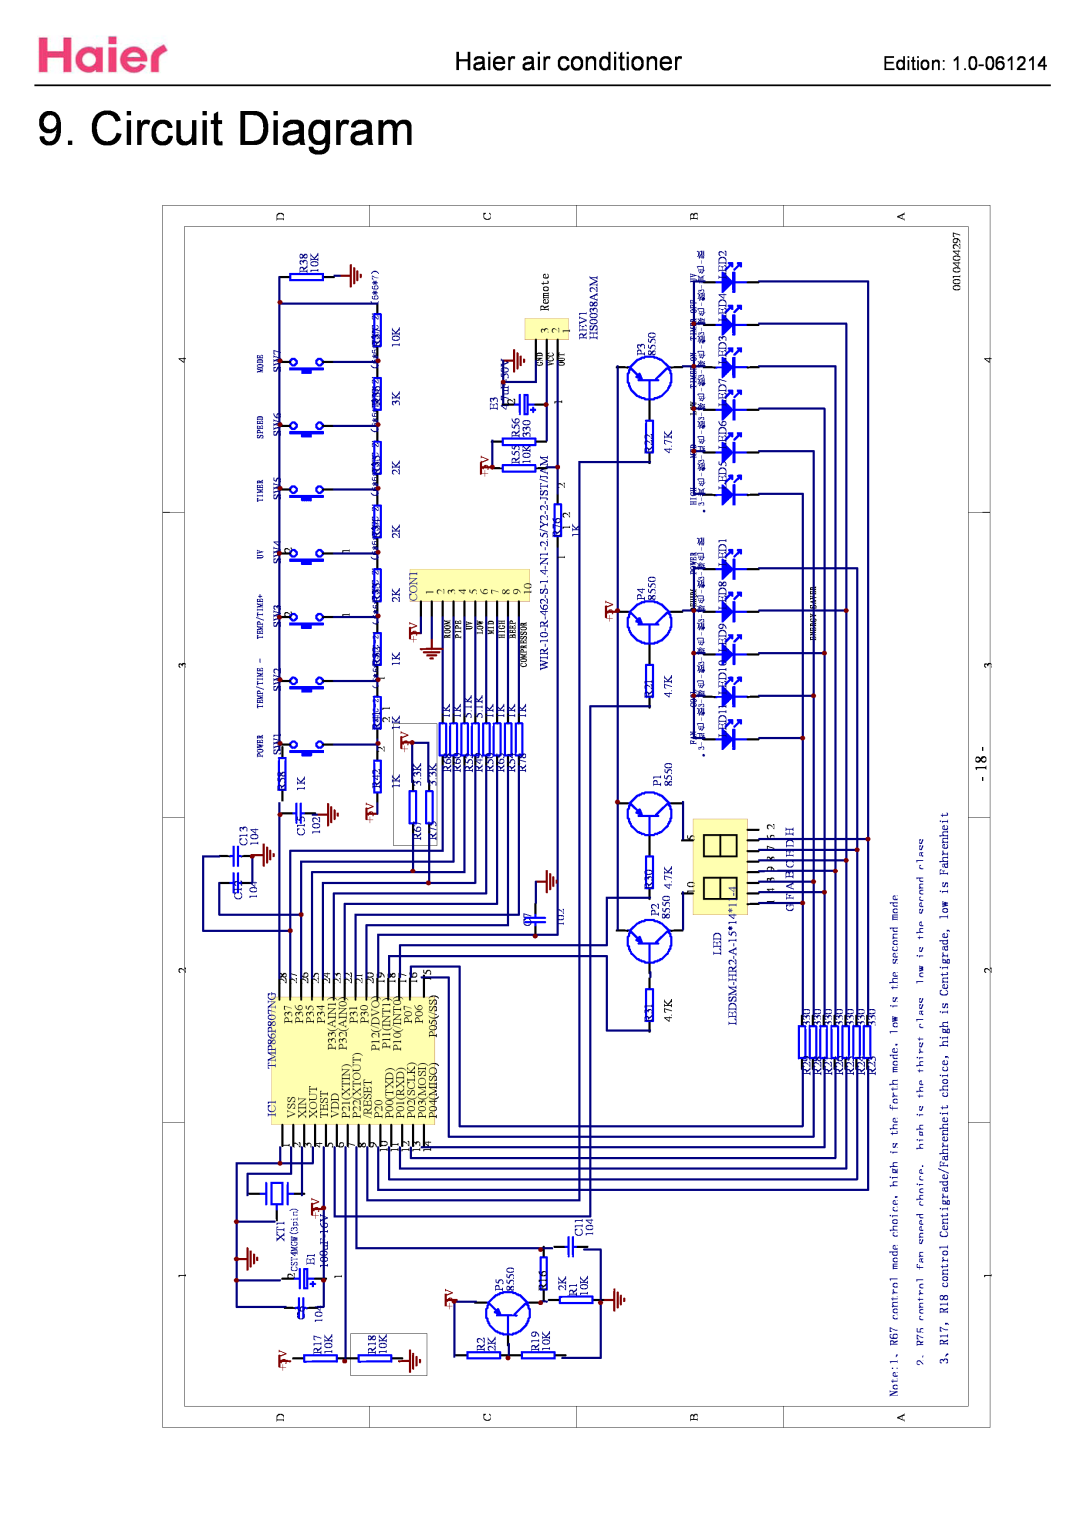 Haier ESA3087 service manual Circuit Diagram, aier air conditioner, D+5V, E1 +5V 100uF-16V, Remote 